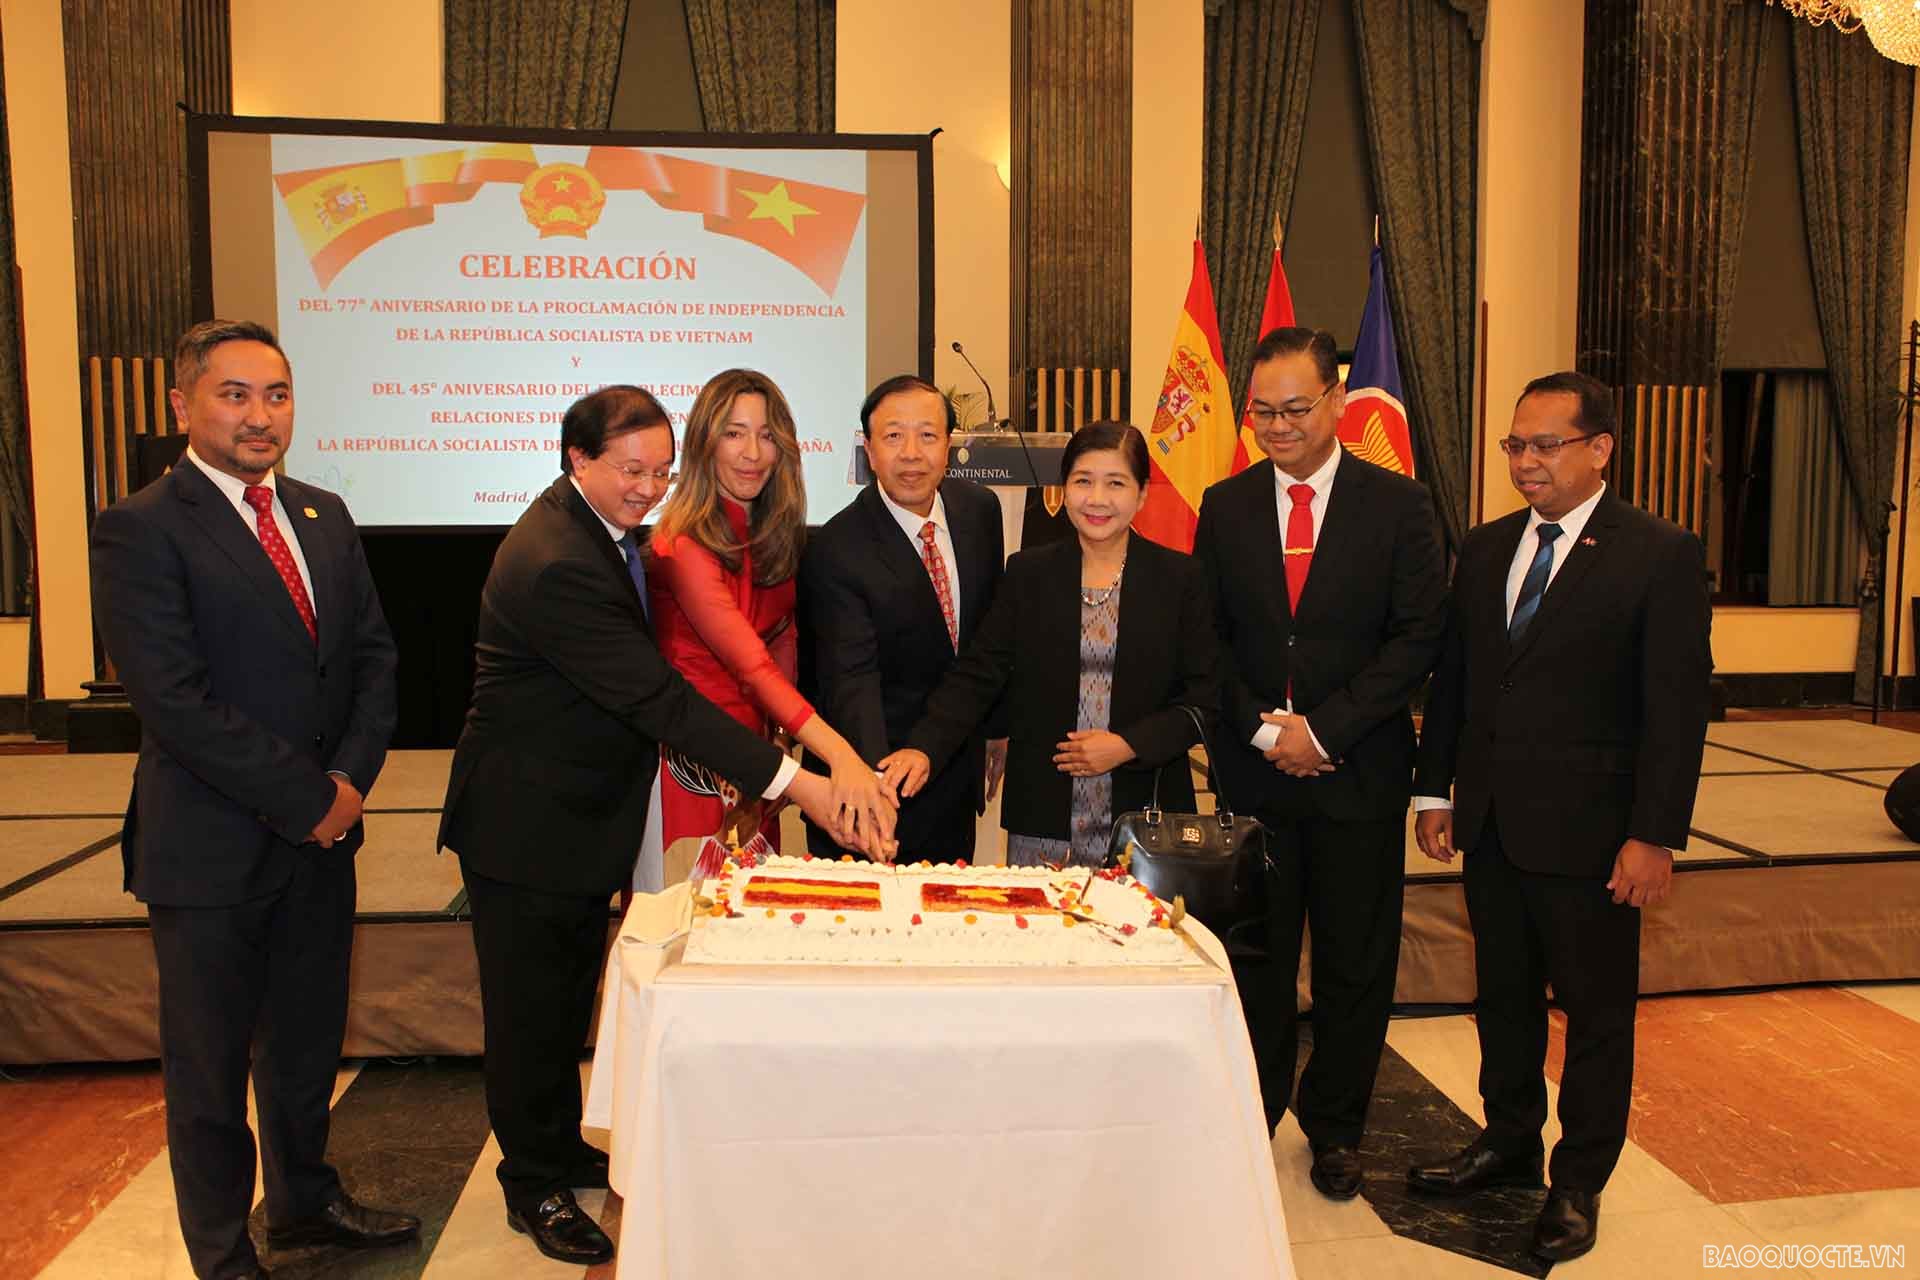 Quan hệ ngoại giao ngày càng được củng cố, giúp Việt Nam đóng vai trò quan trọng trên thế giới. Xem hình ảnh để cảm nhận sức mạnh của sự hợp tác và giao lưu giữa các quốc gia.